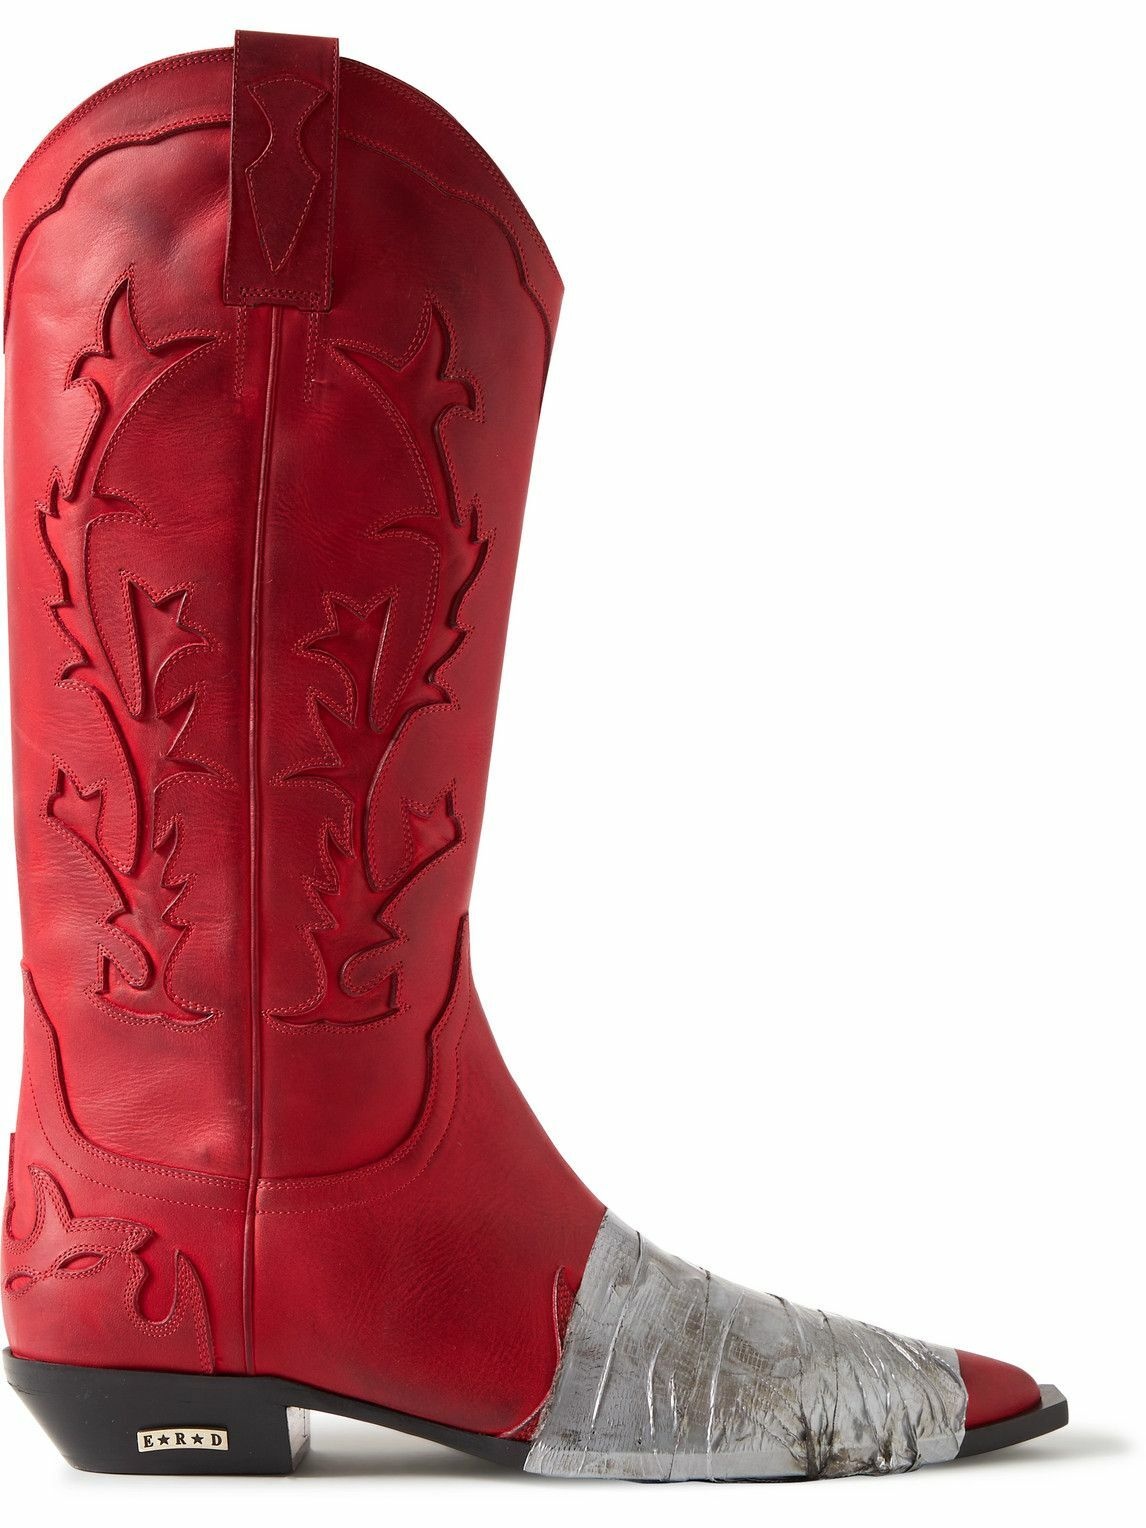 Photo: Enfants Riches Déprimés - Embellished Panelled Leather Cowboy Boots - Red